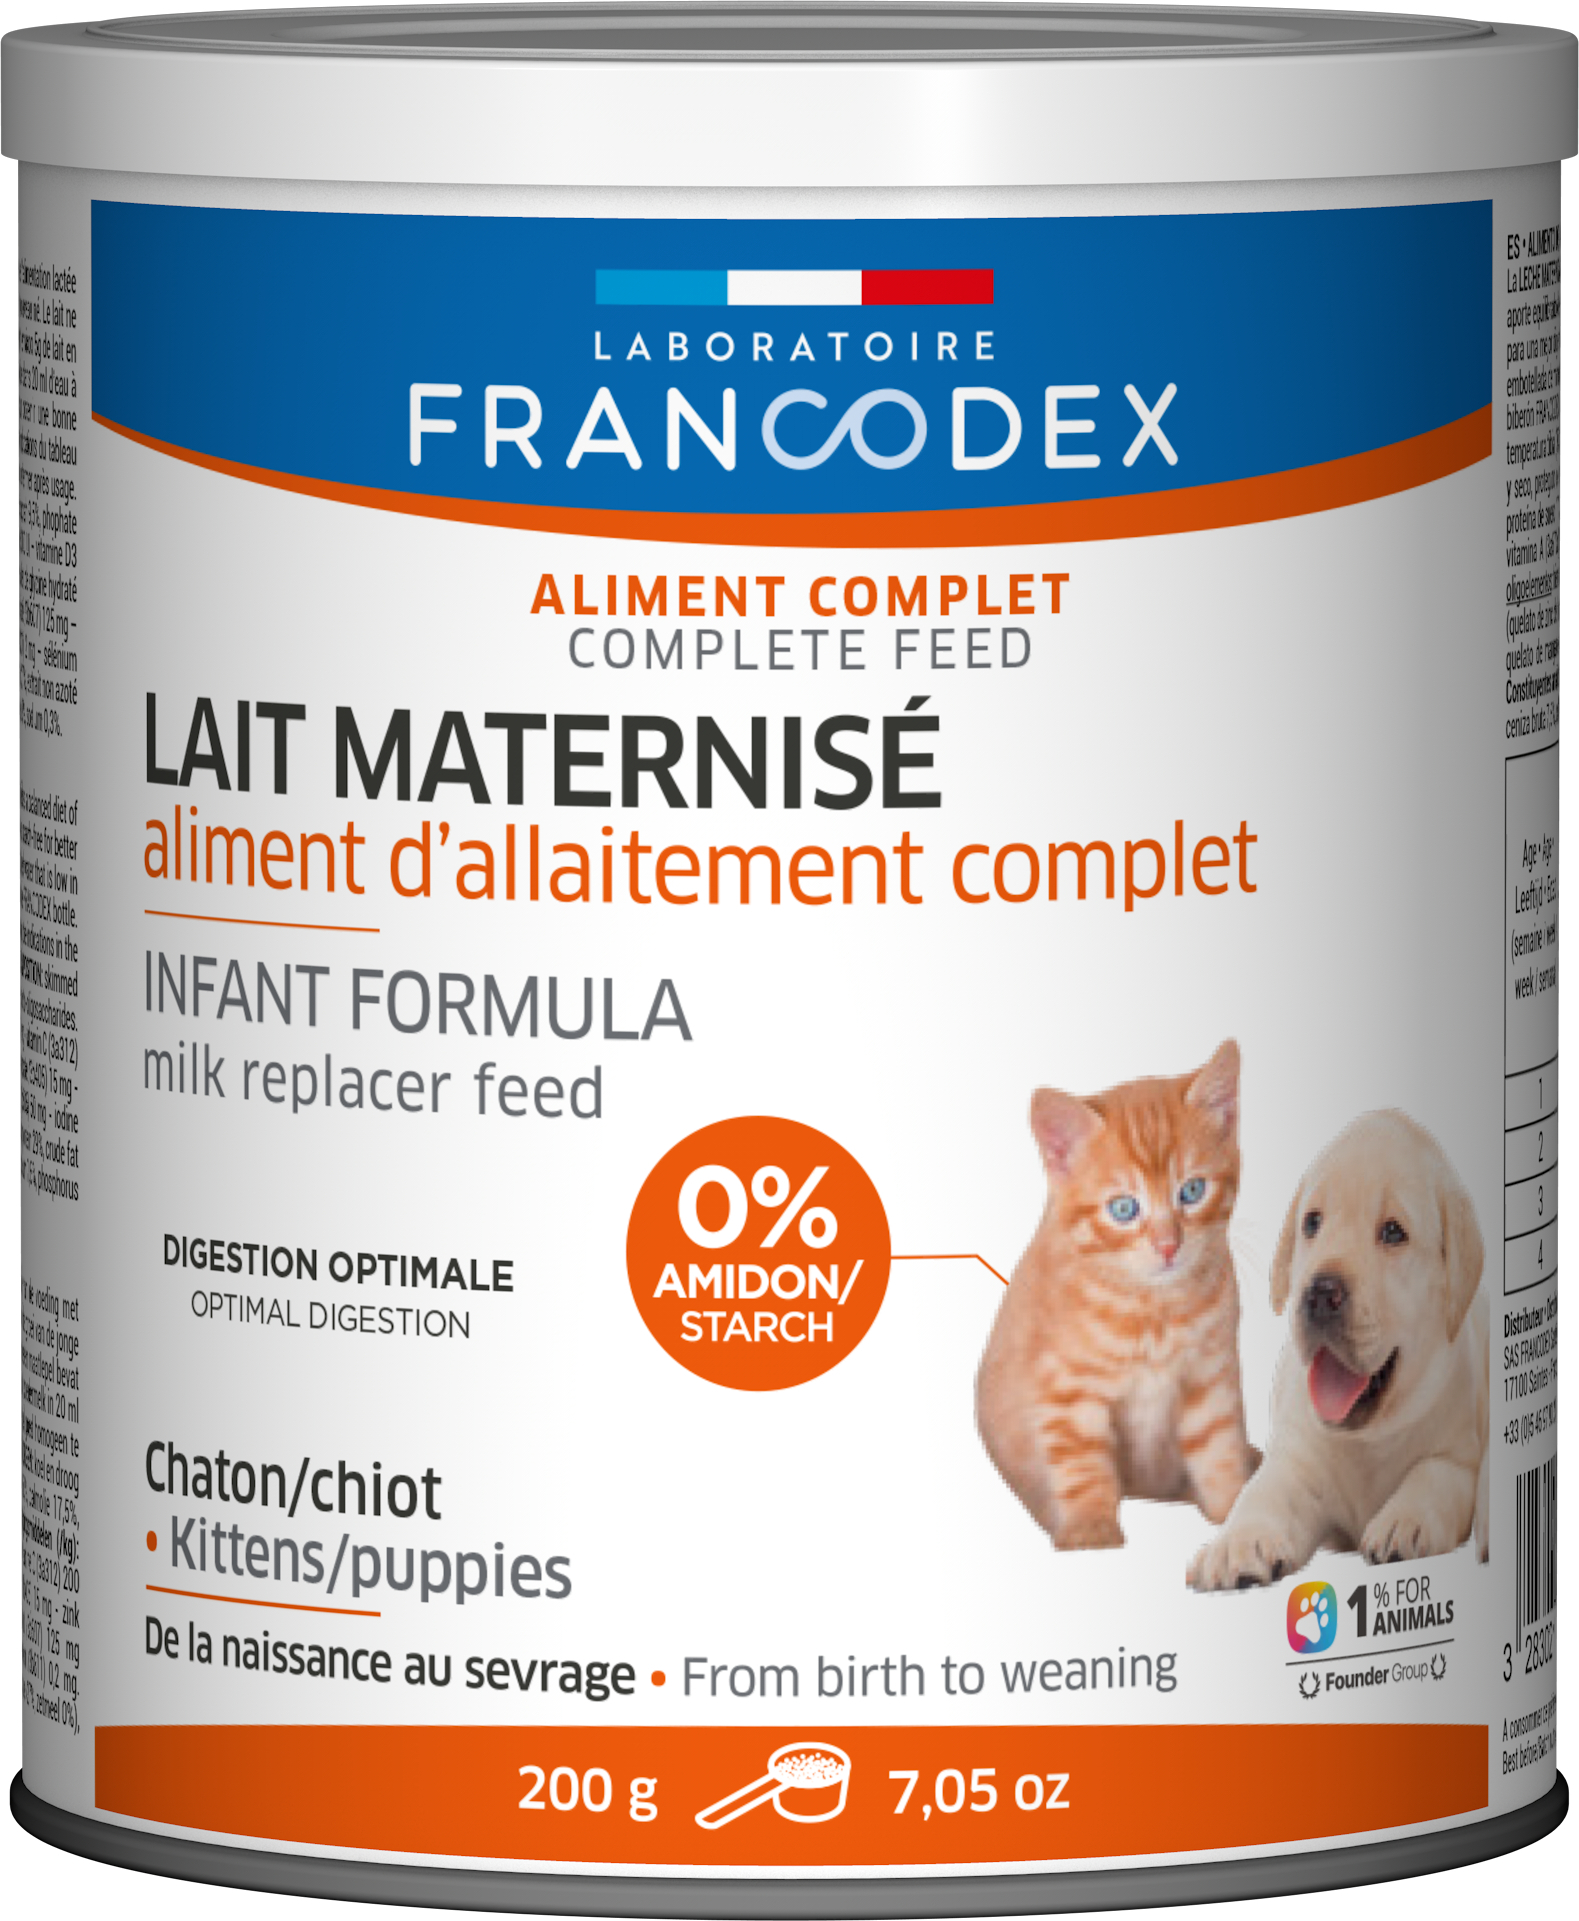 Francodex Leche maternizada para gatitos - 200g